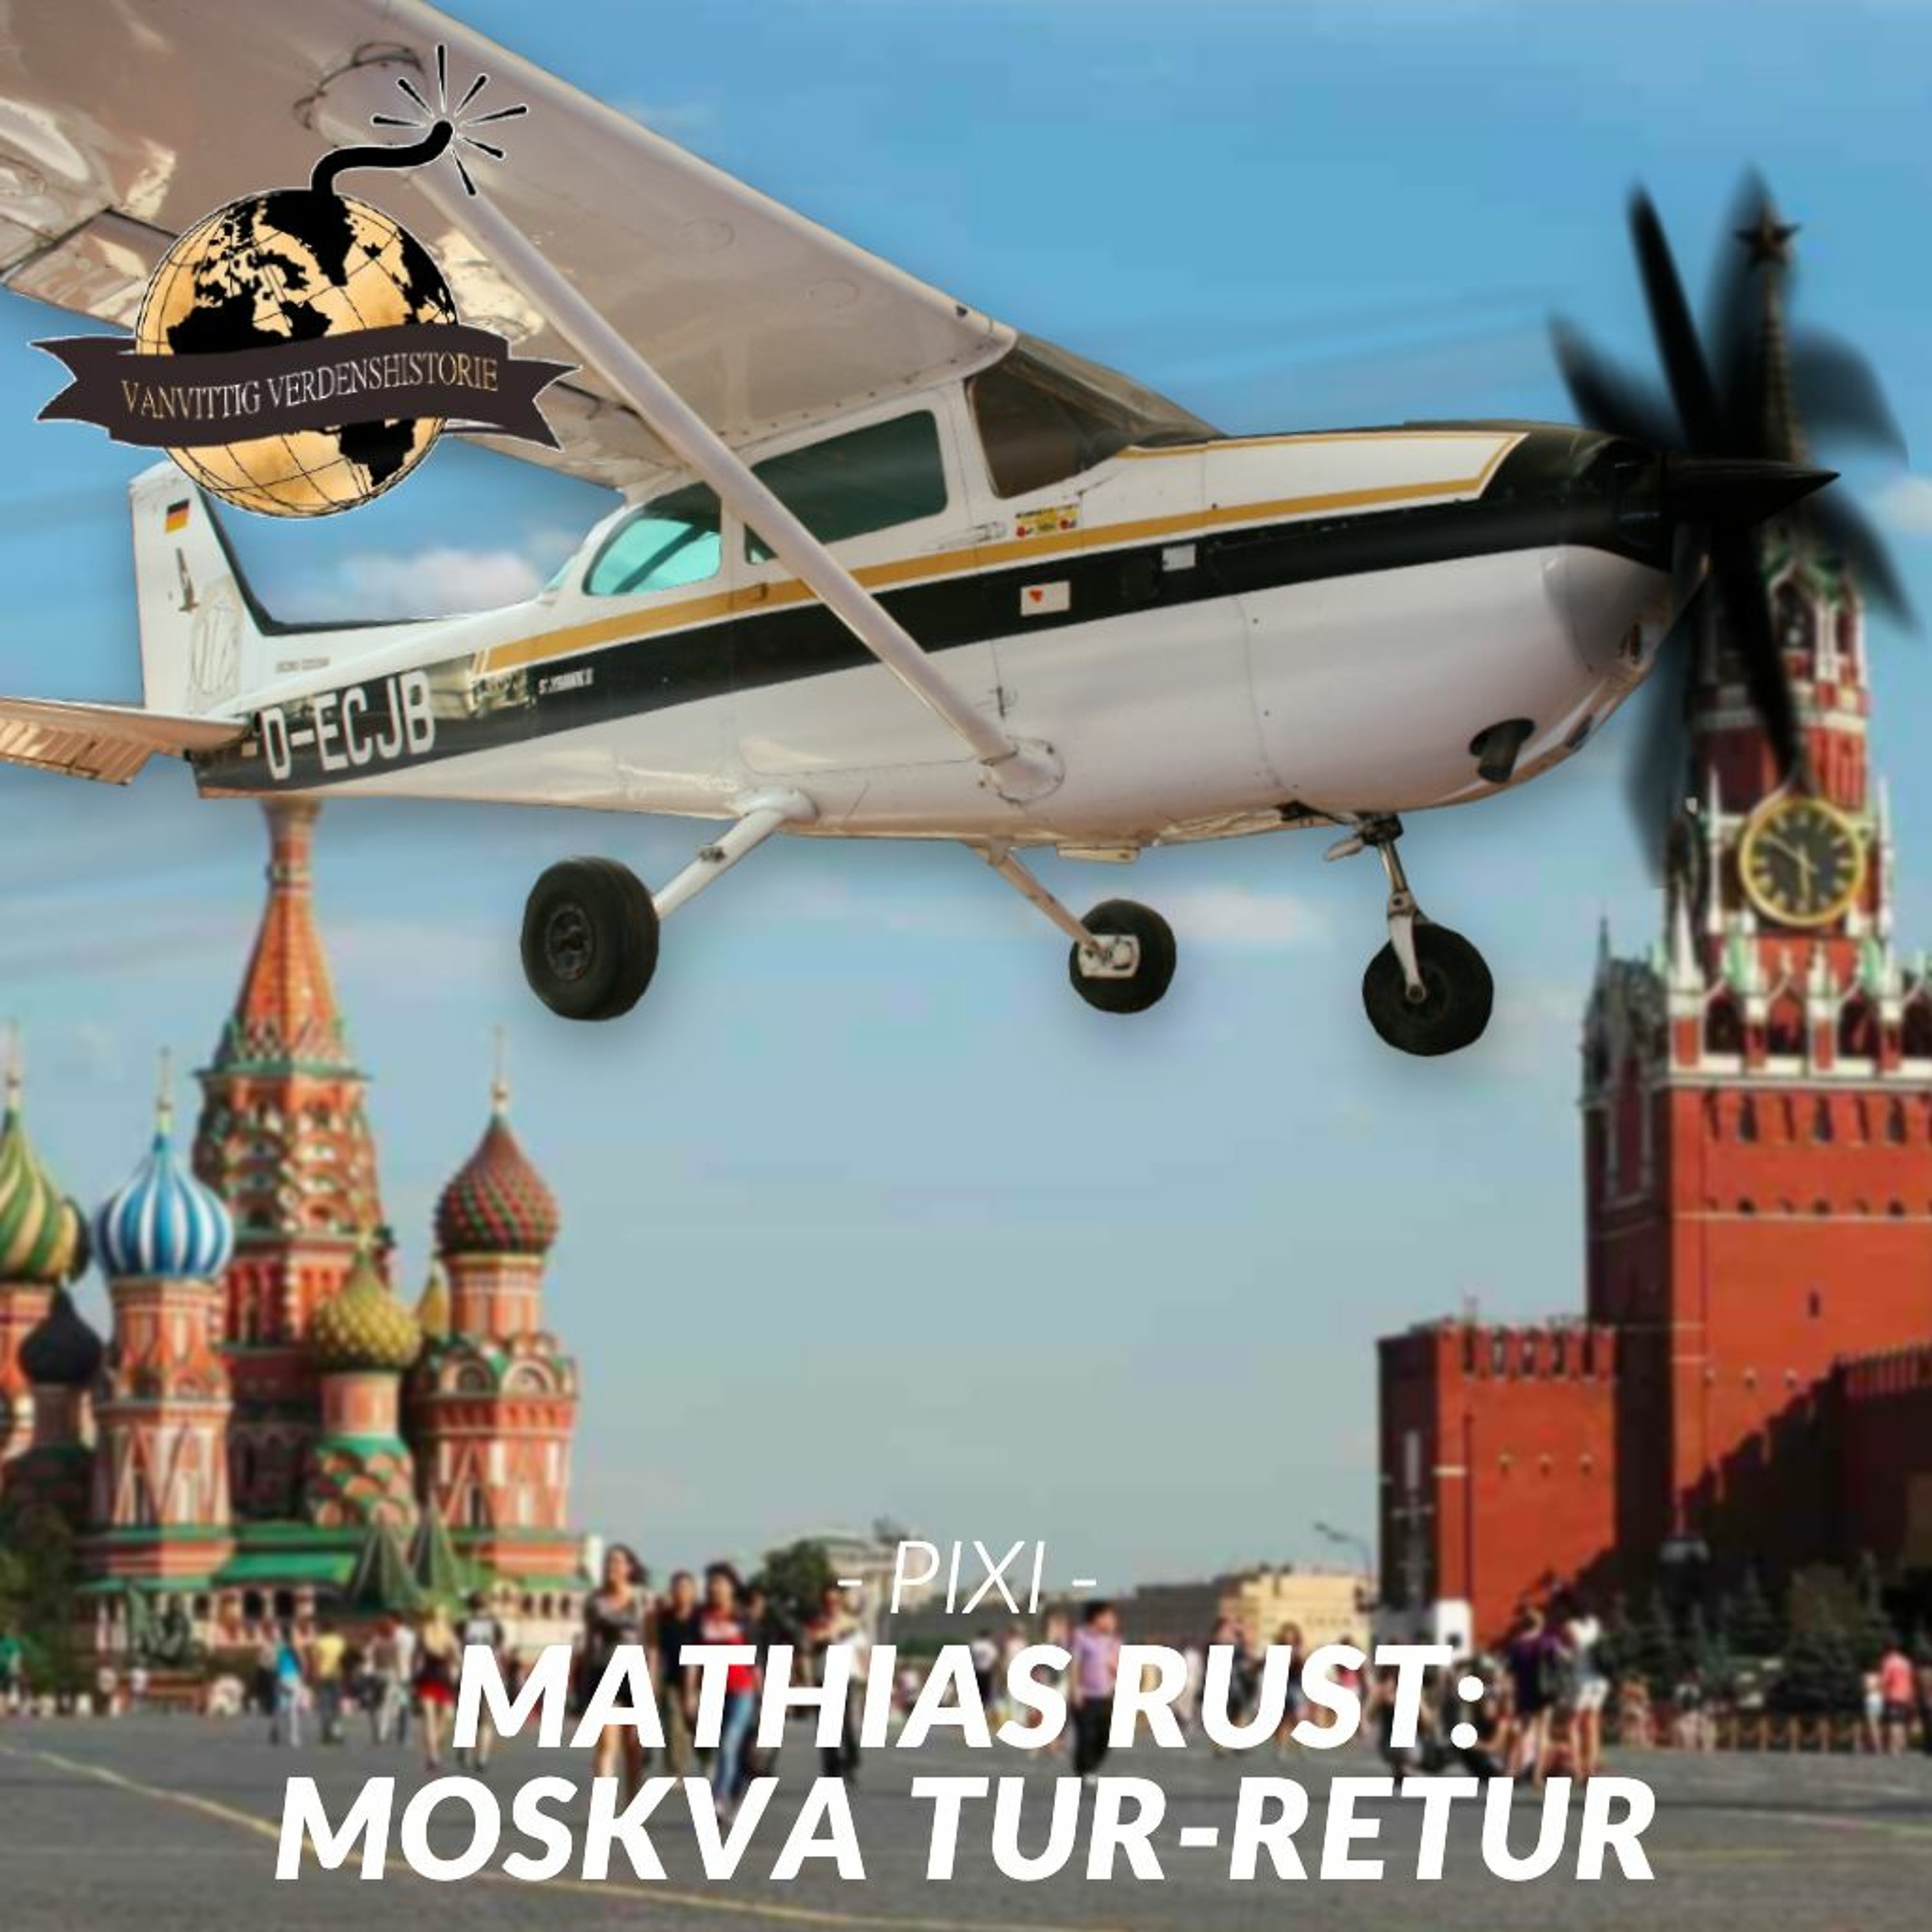 PIXI: Mathias Rust - Moskva Tur-Retur